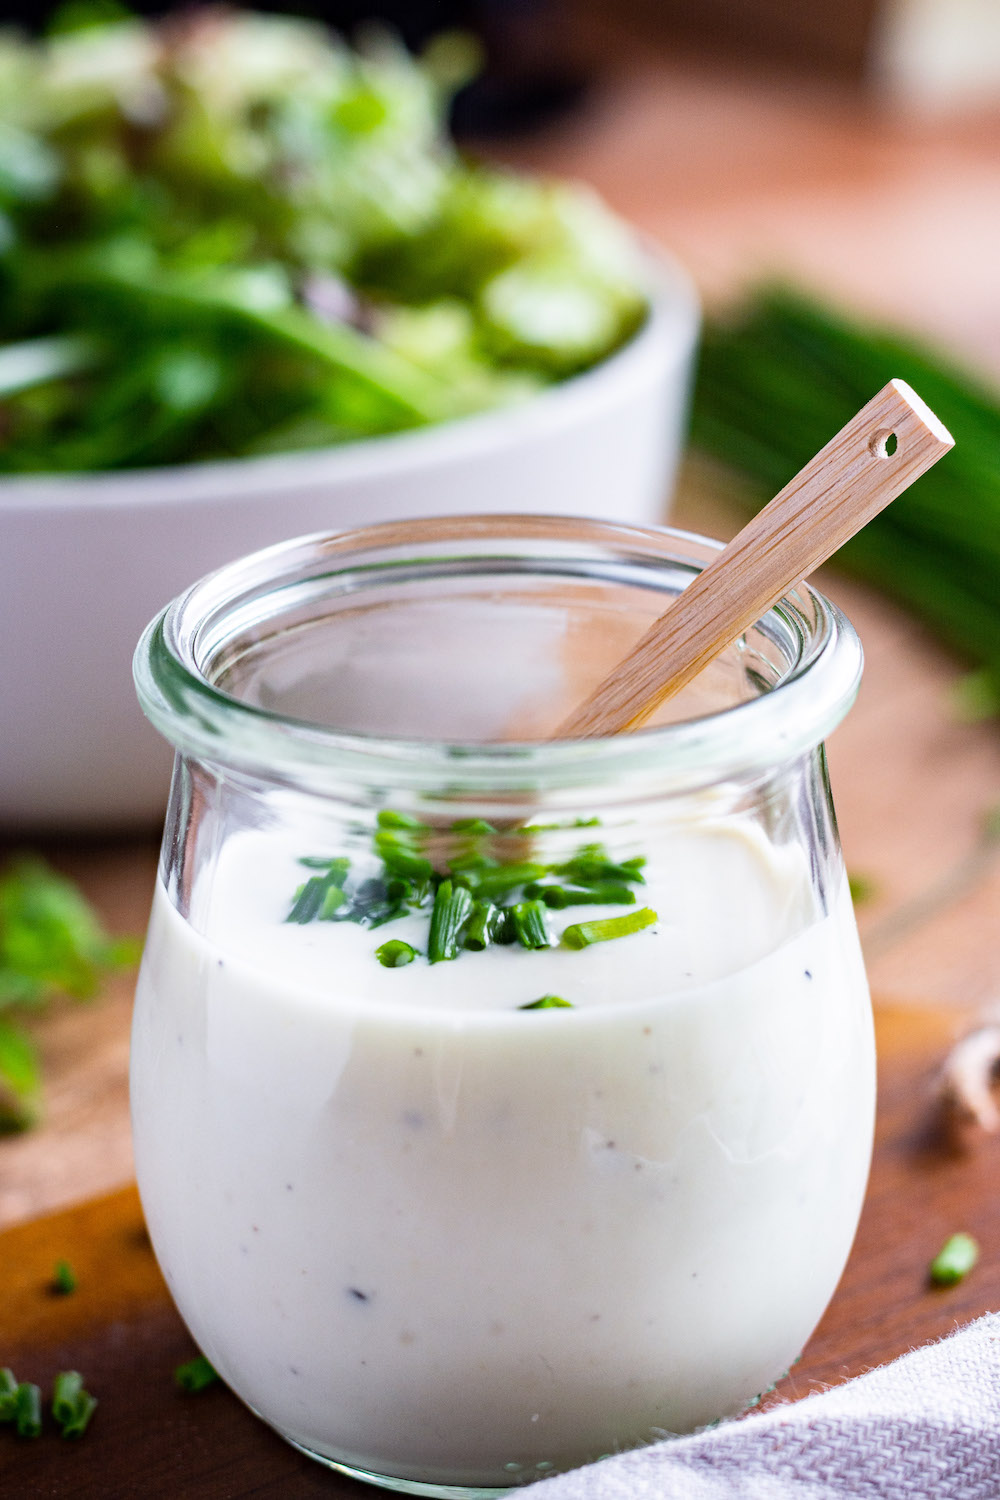 Joghurt-Senf-Dressing in einem Glas, in welchem ein kleiner Holzlöffel steckt. Mit Schnittlauch bestreut. Im Hintergrund steht eine Schüssel mit Salat.